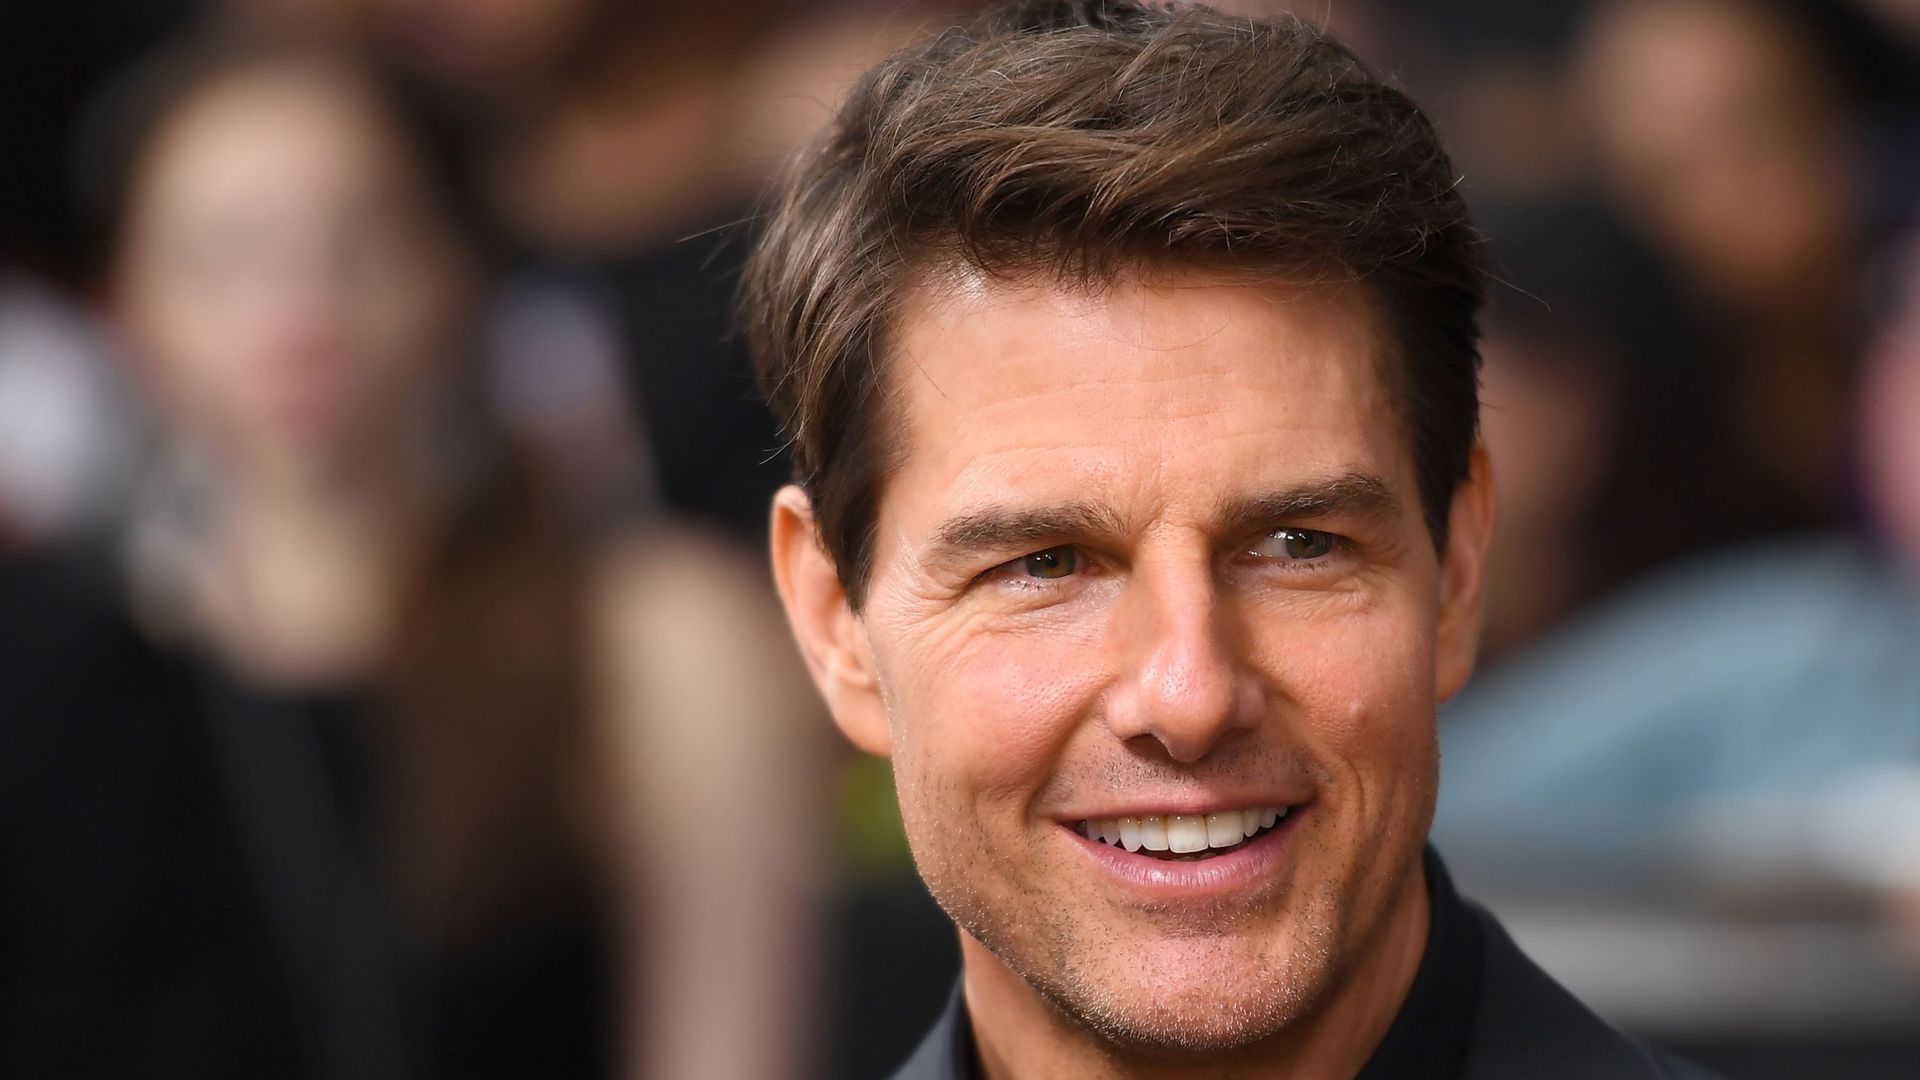 Le tournage de "Mission: Impossible 6" suspendu après l'accident de Tom Cruise